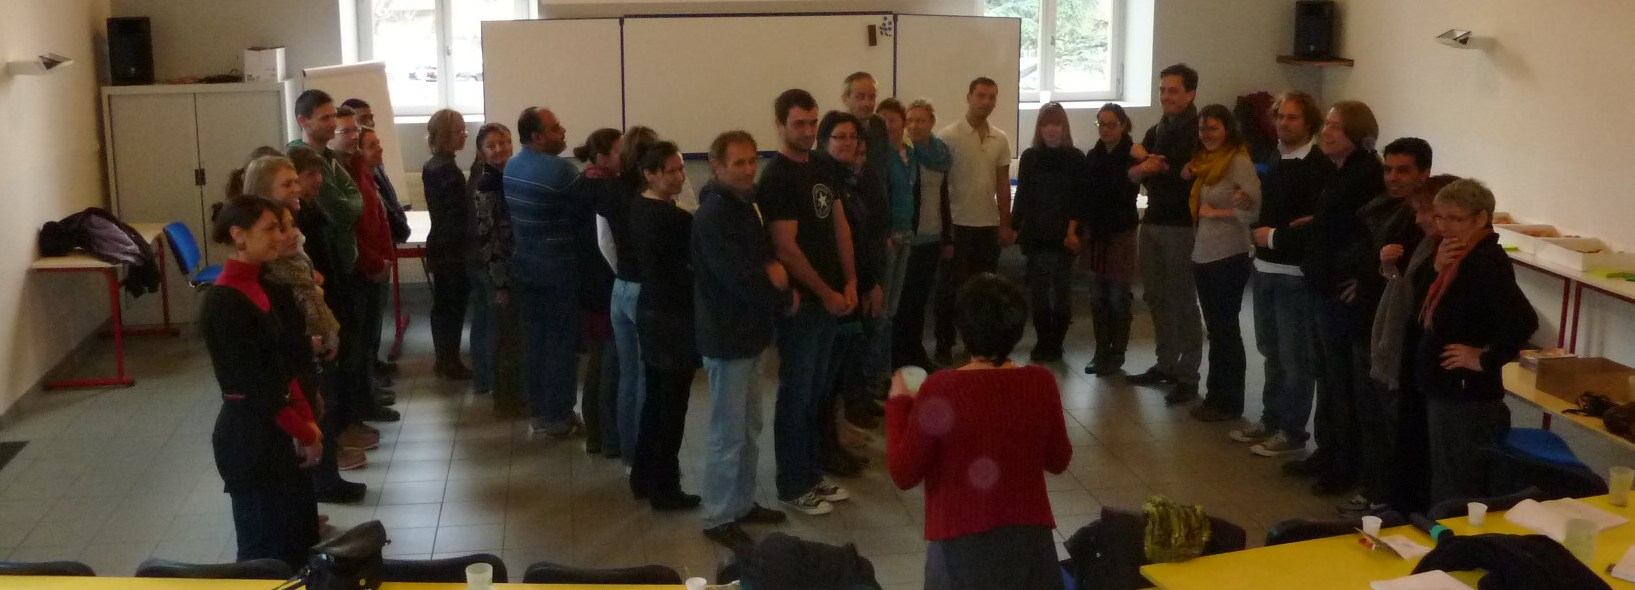 Session de formation des animateurs jeunesse d'Ardèche, décembre 2012